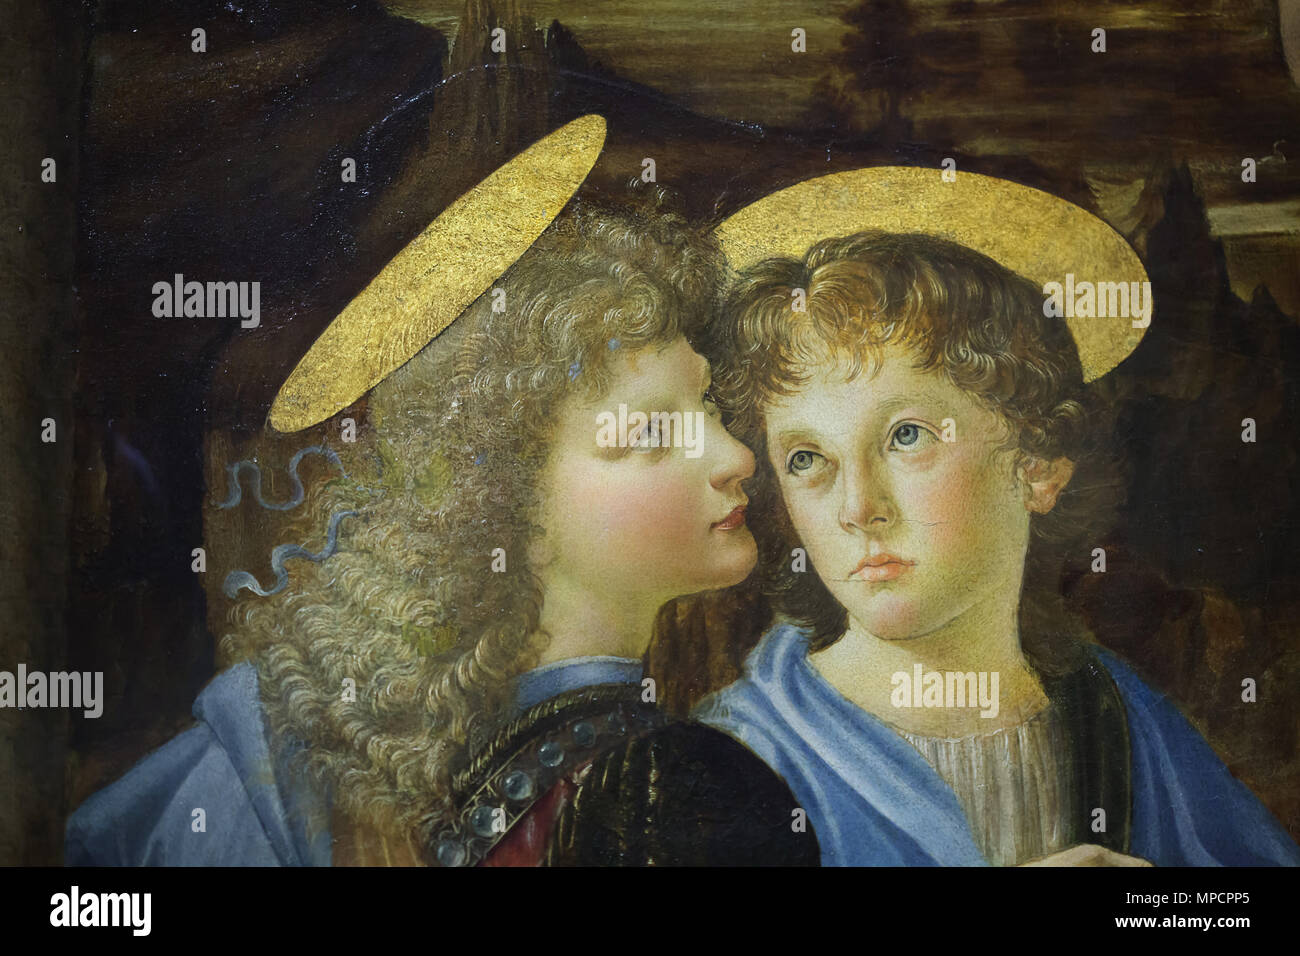 Zwei Engel auf dem Gemälde dargestellt Die Taufe Christi (1472-1475) von der italienischen Renaissance Maler Andrea Del Verrocchio und sein Schüler Leonardo da Vinci in den Uffizien (Galleria degli Uffizi) in Florenz, Toskana, Italien. Das Blatt Kopf wurde von Leonardo da Vinci gemalt. Stockfoto